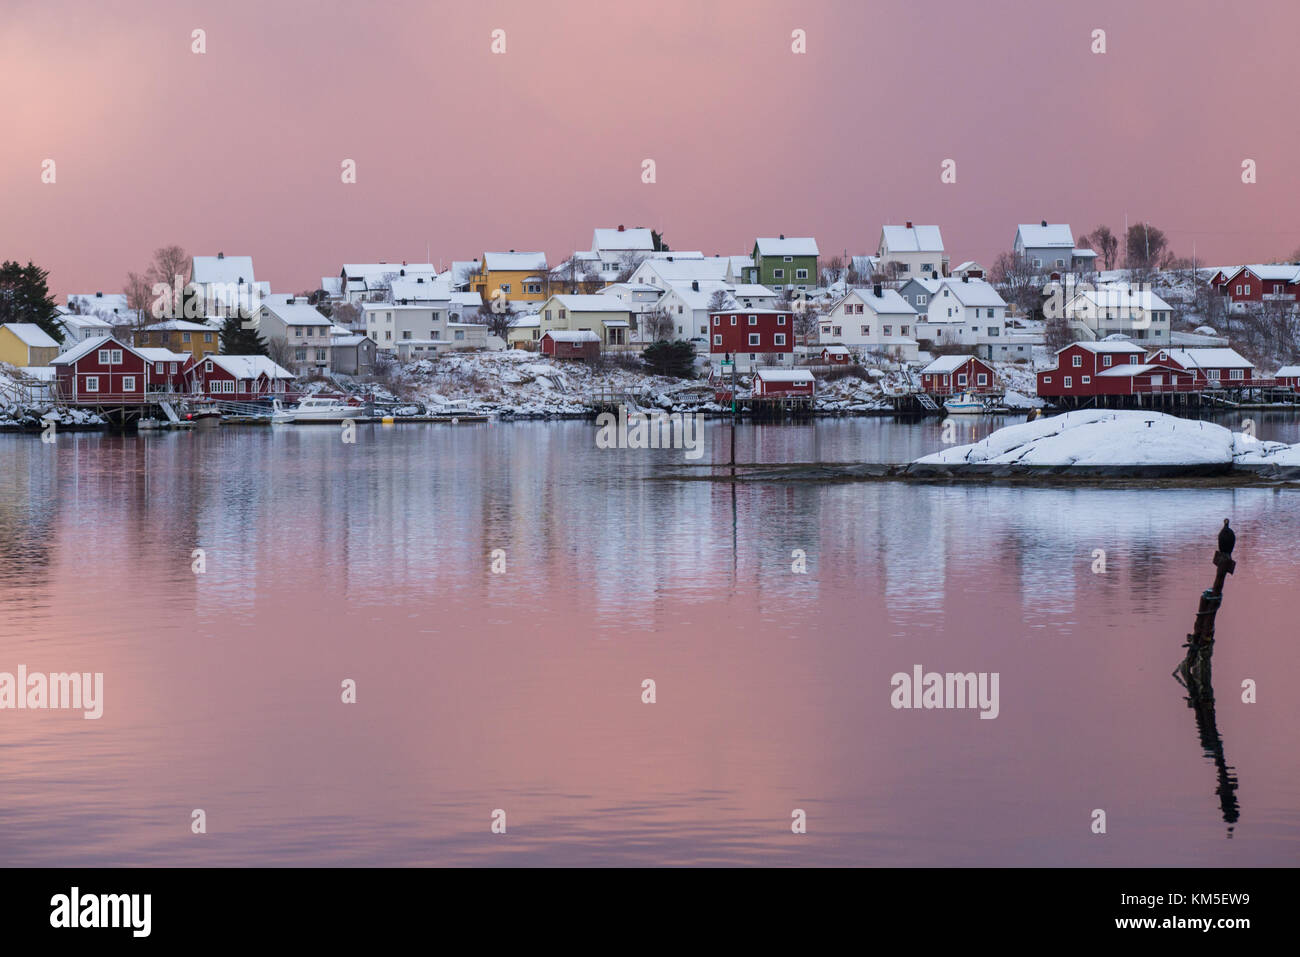 Die atemberaubende Stadt reine mit einem Kormoran anschauen, Lofoten, Norwegen. Stockfoto